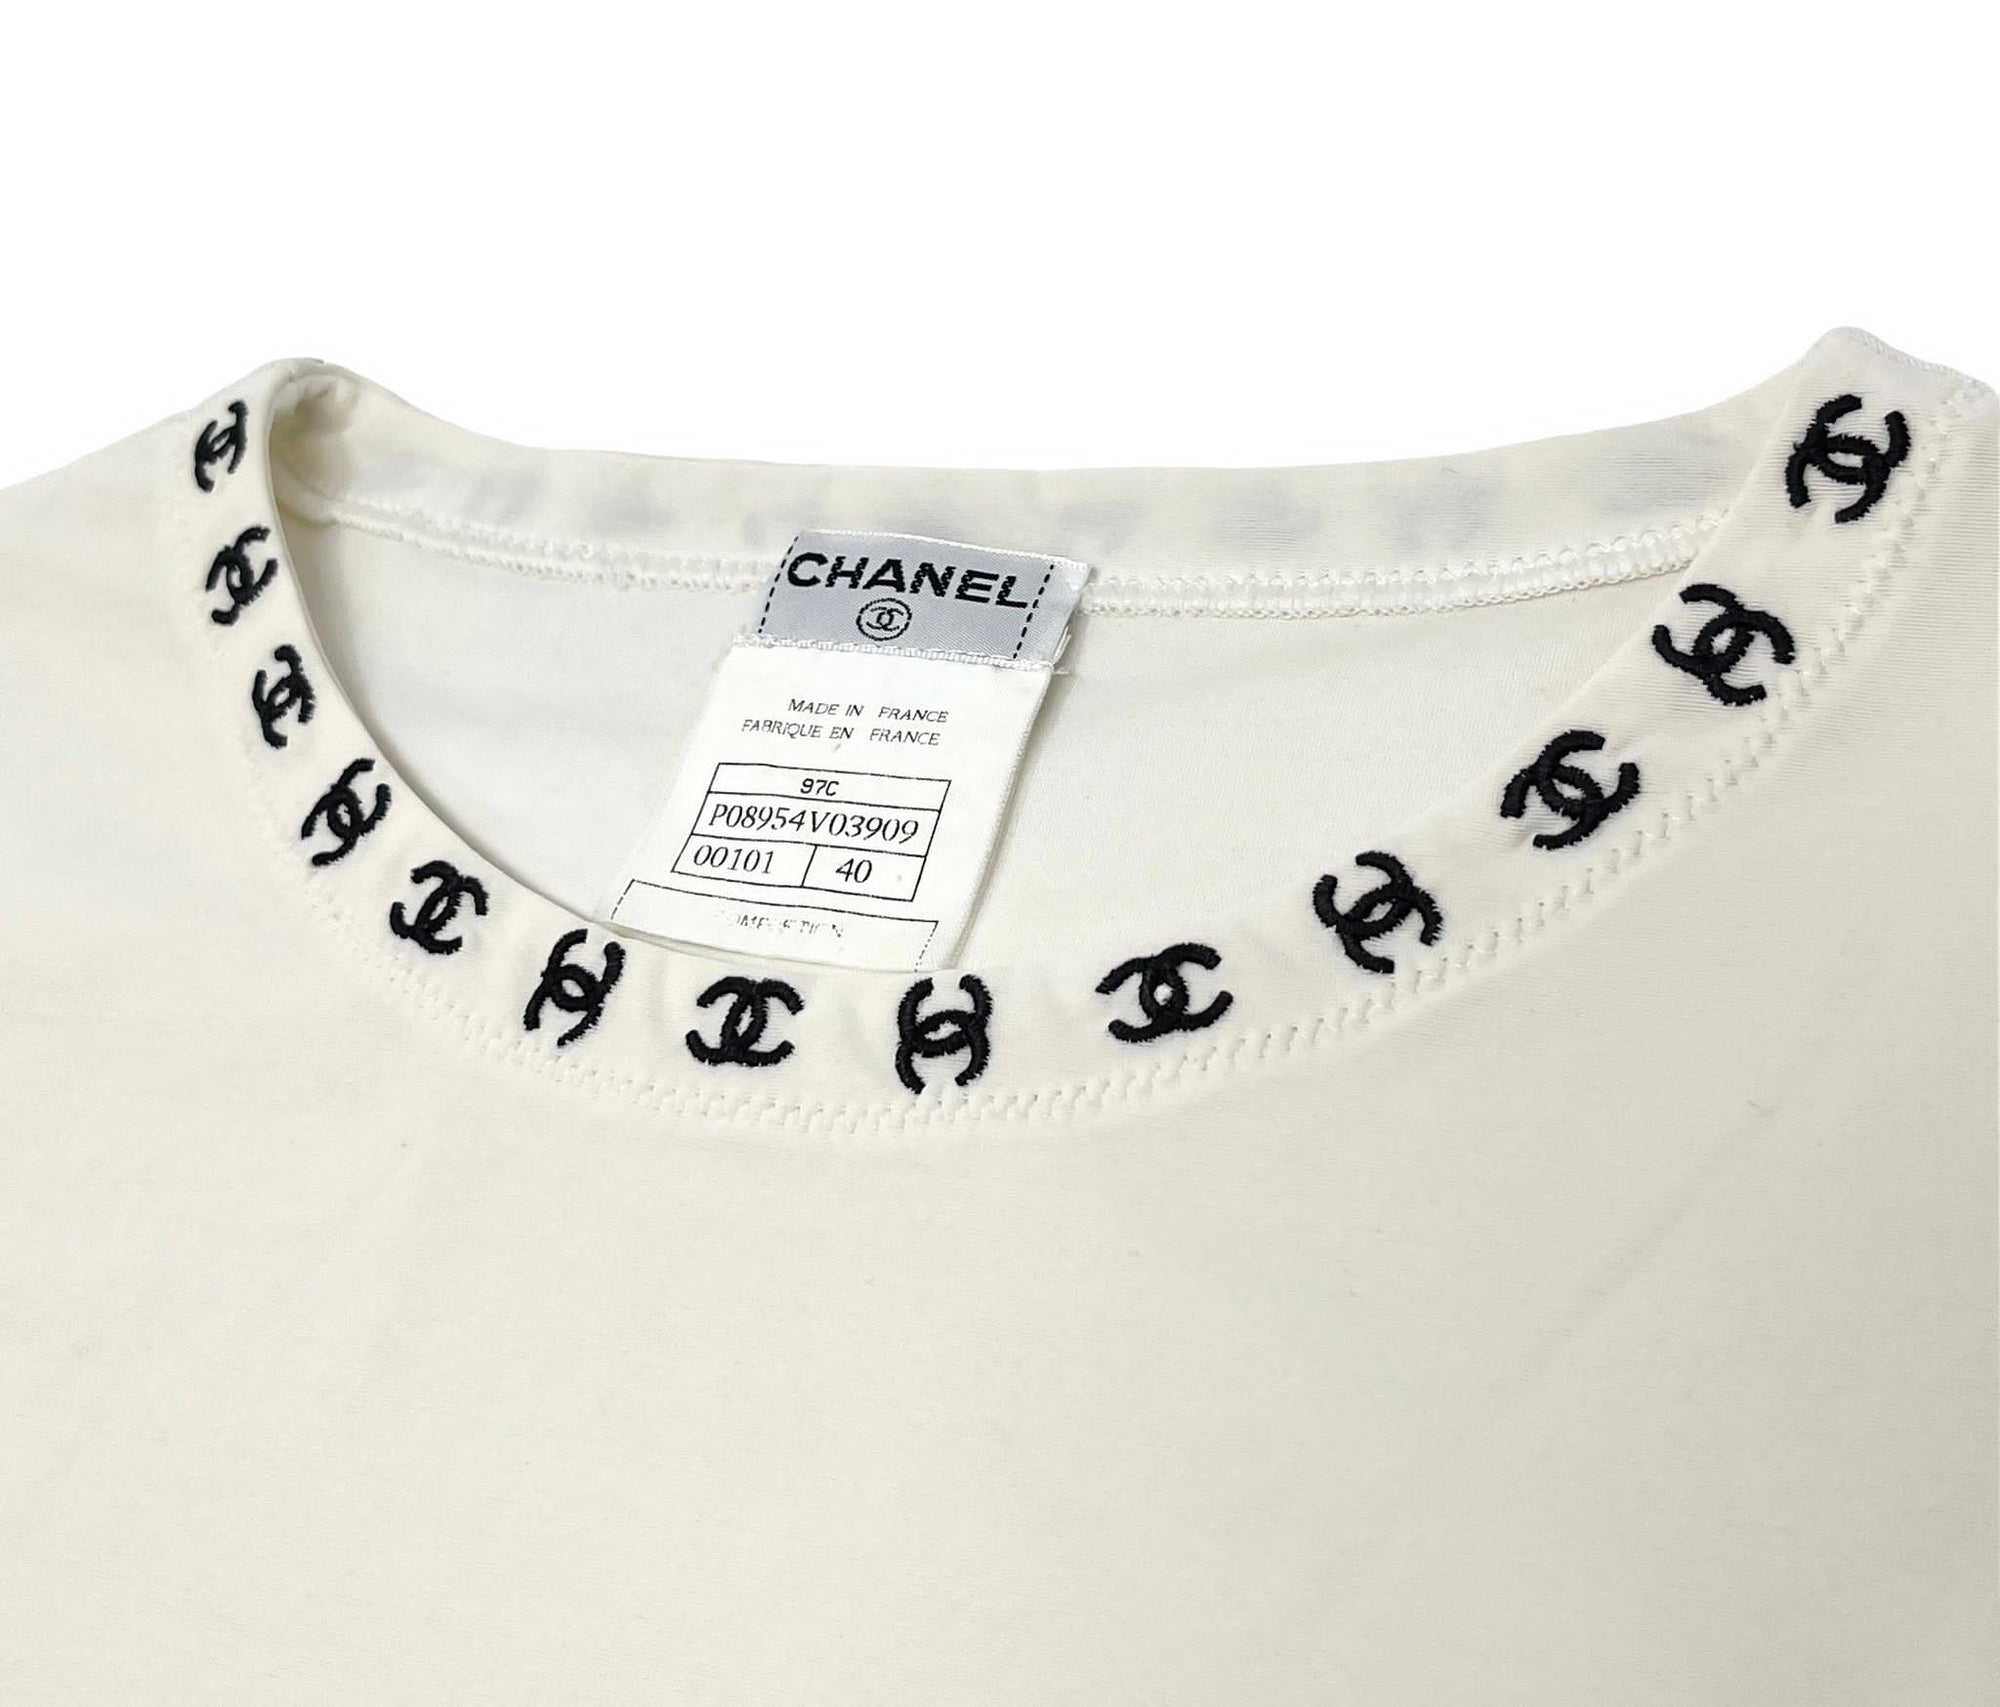 Chanel White Logo Ringer Shirt